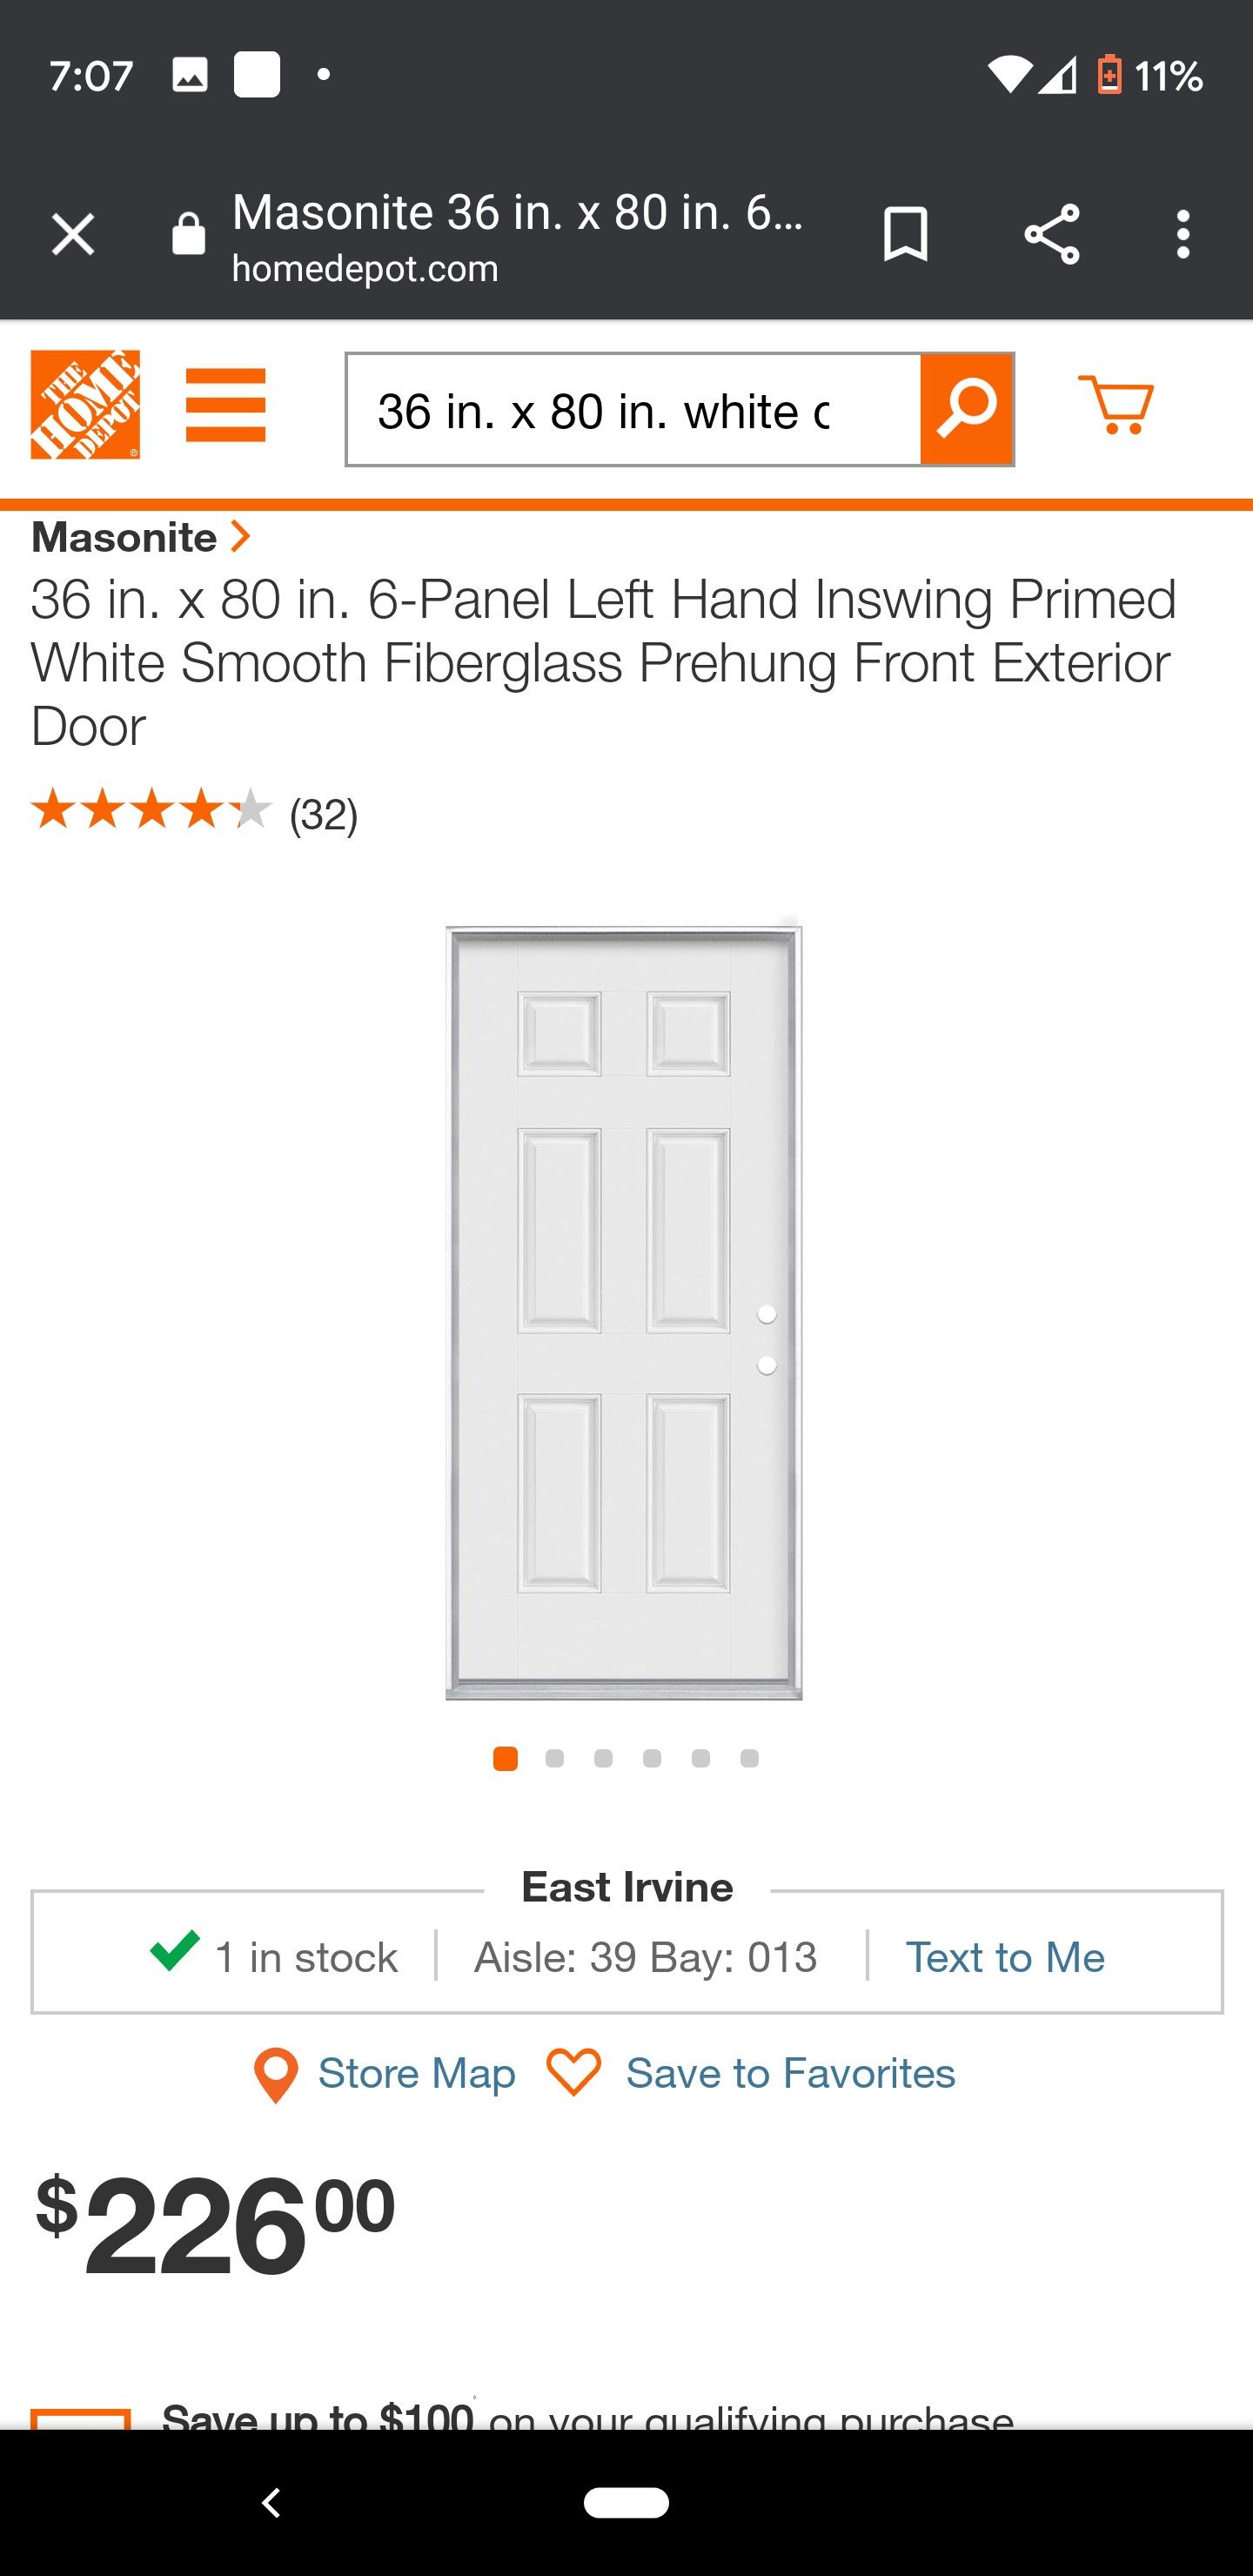 36 in. x 80 in. white door